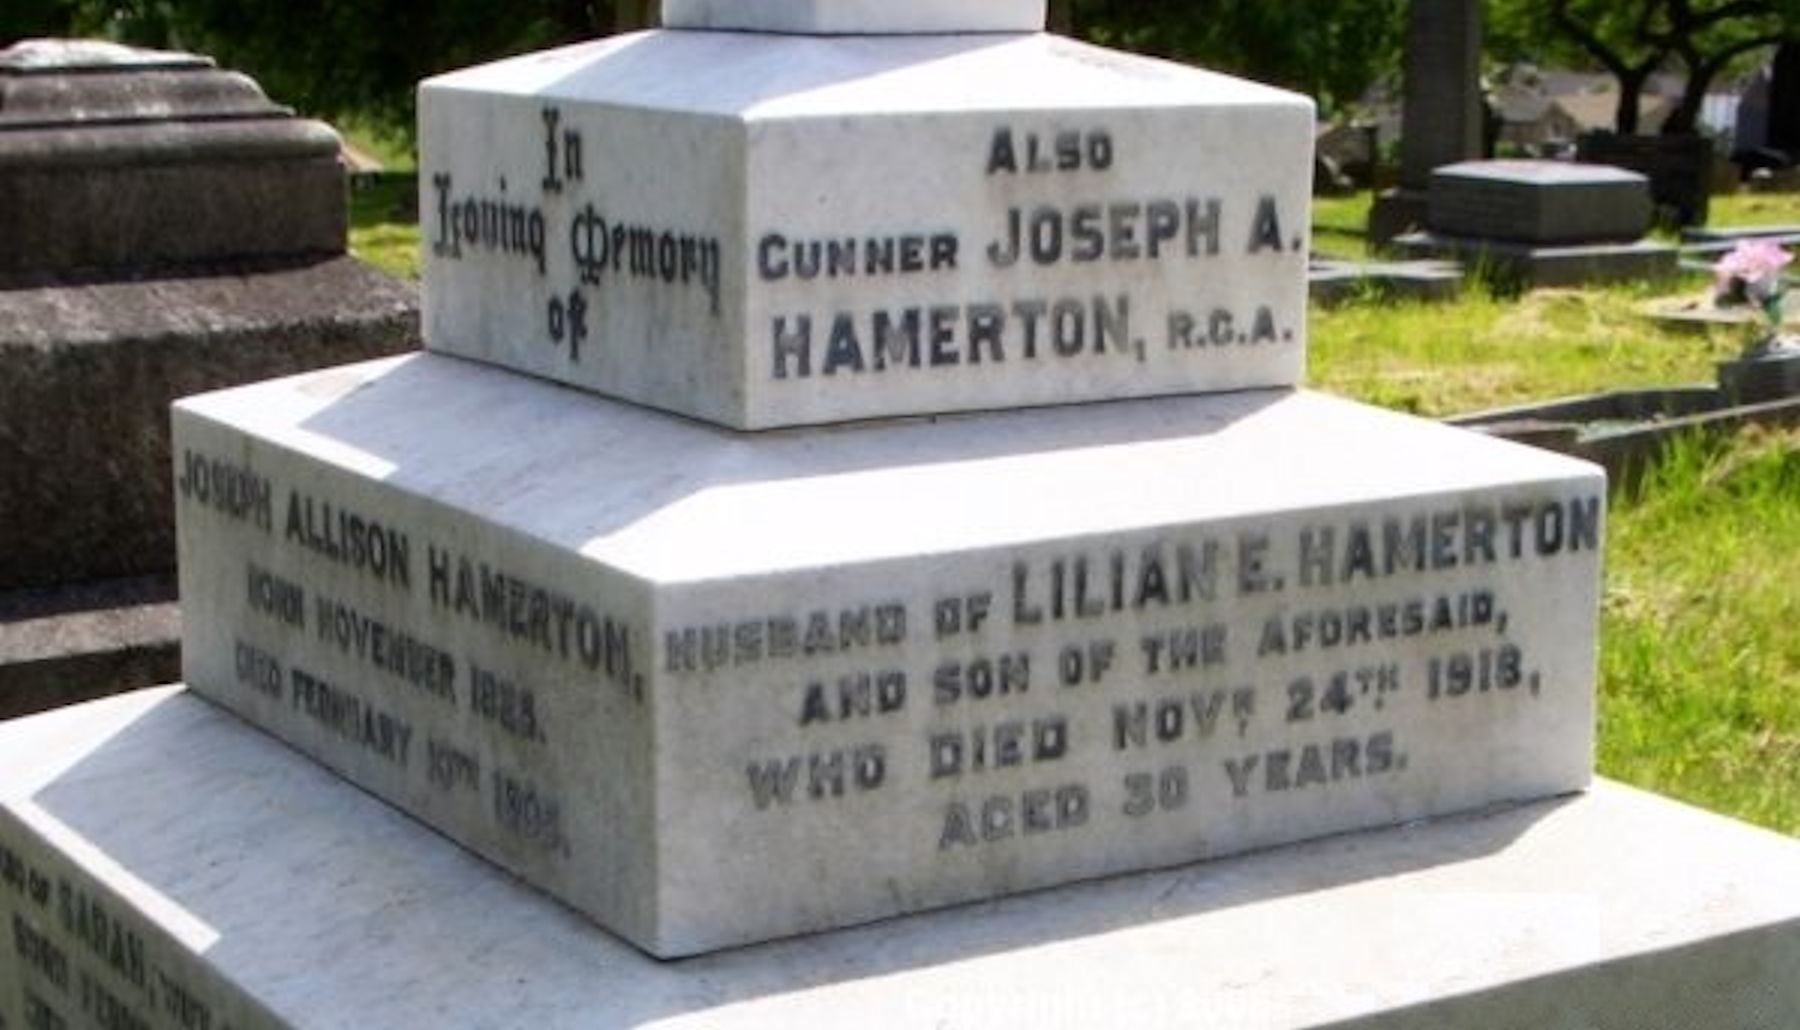 Joseph Allison Hamerton's grave